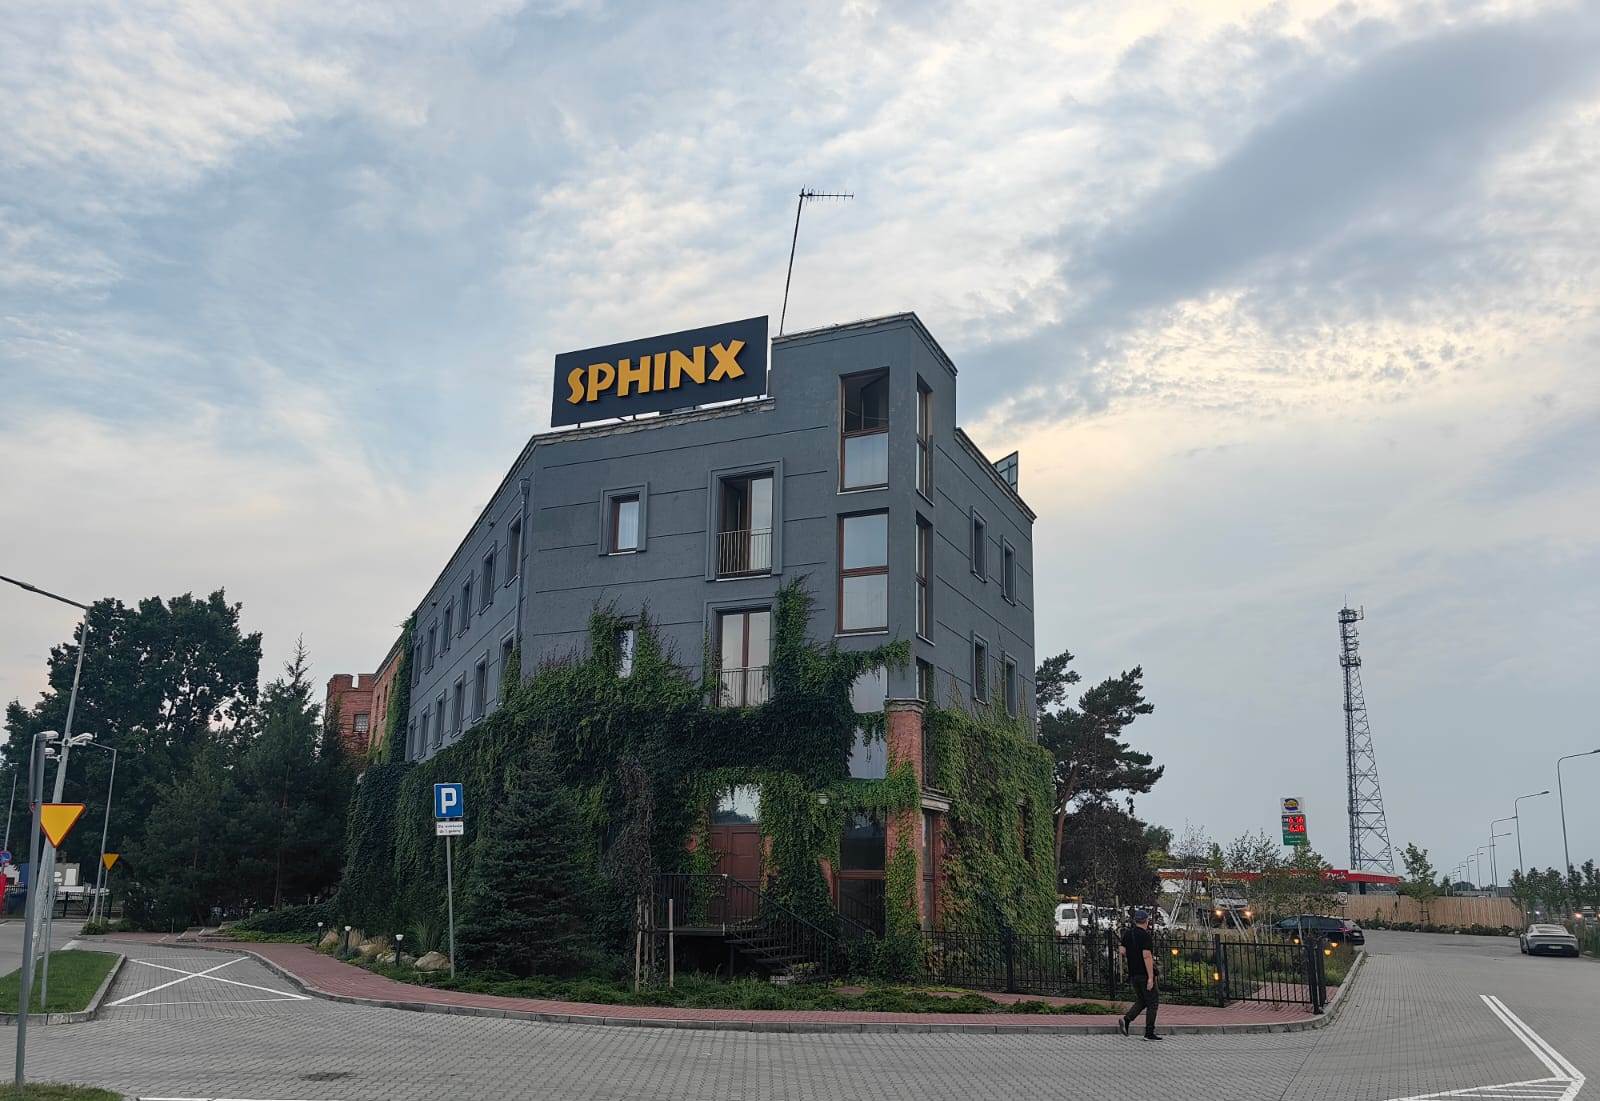 Sphinx otworzył nową restaurację przy S8 w Żabiej Woli